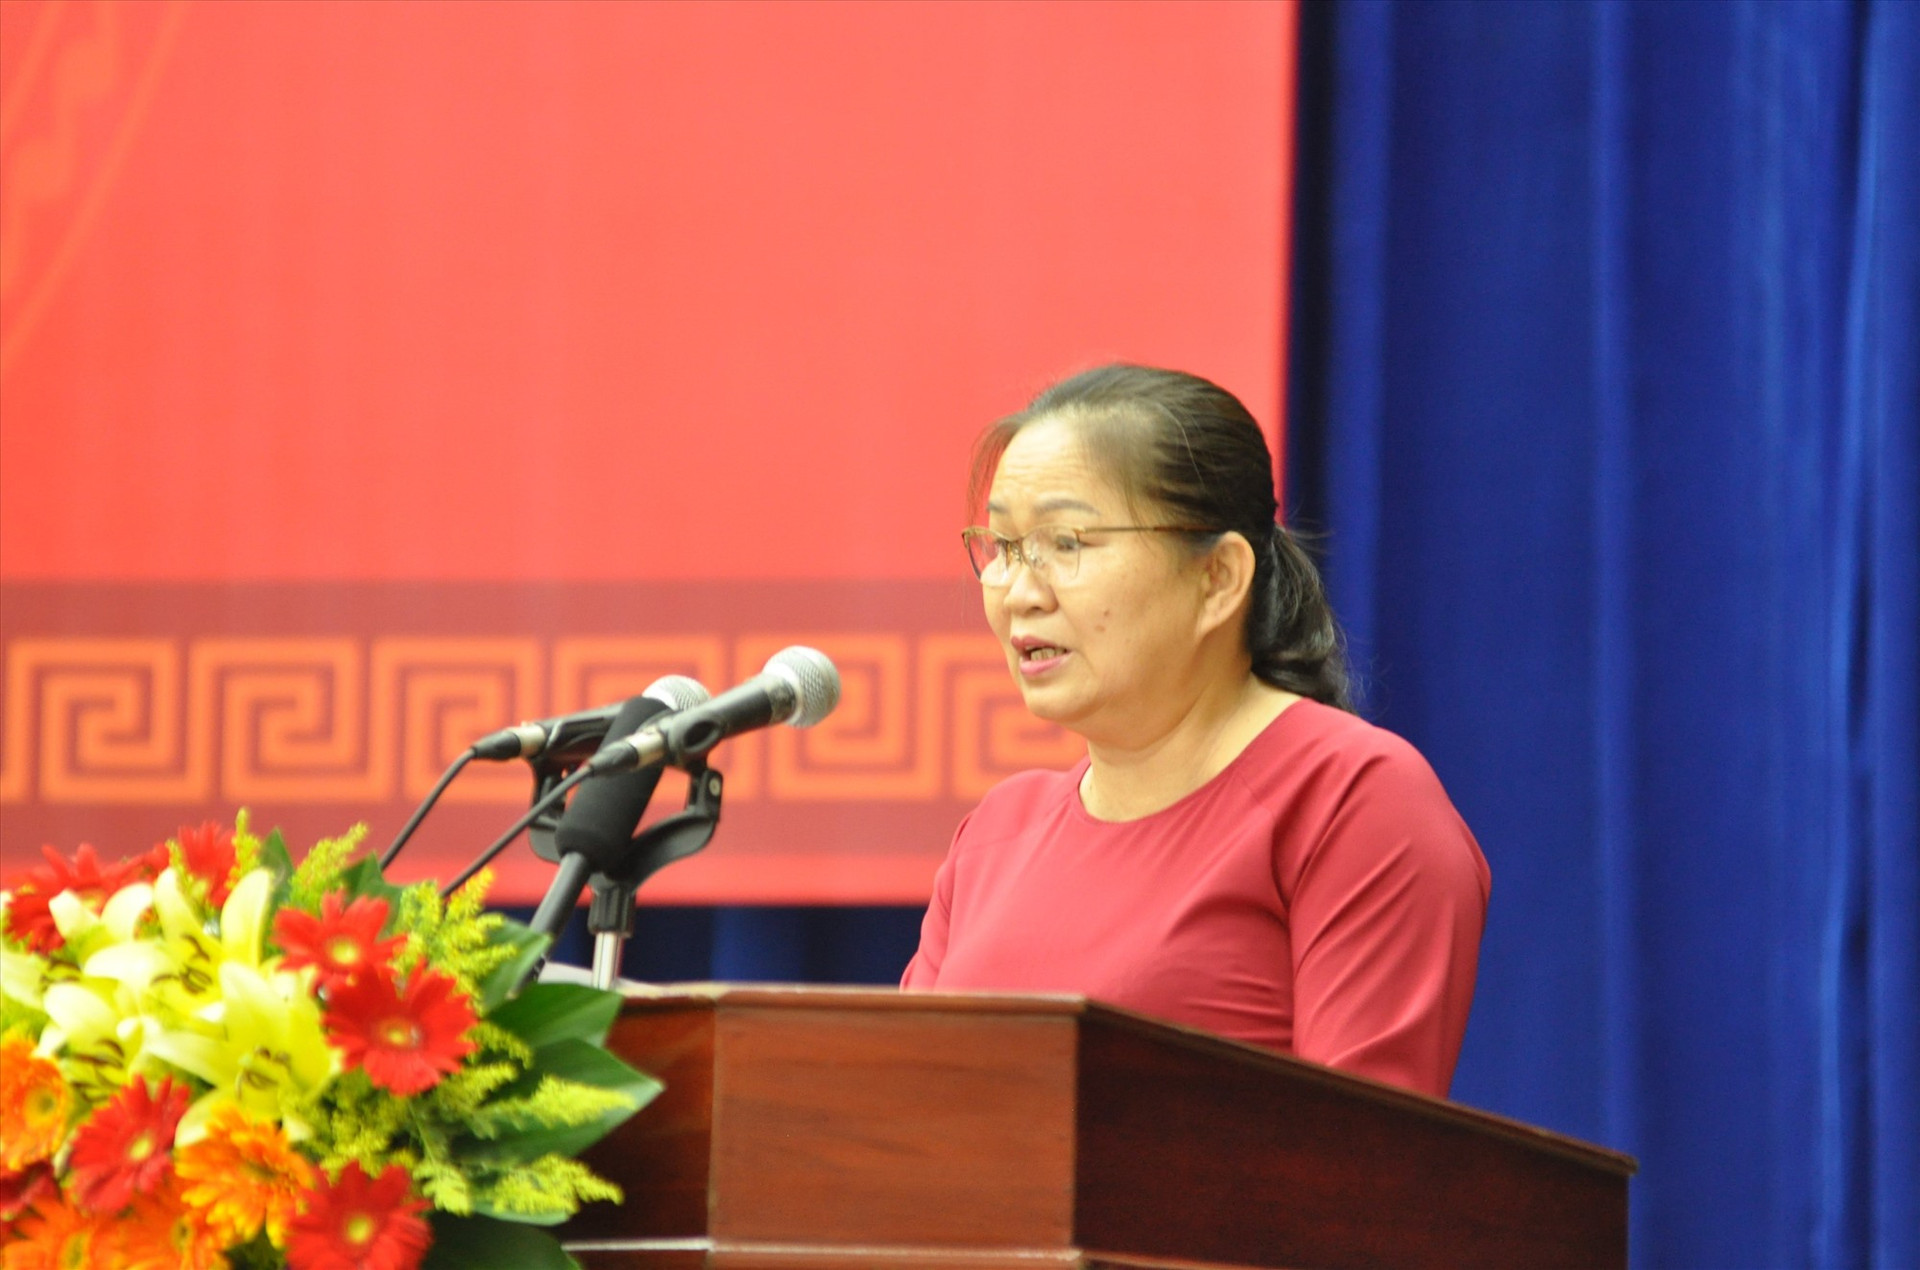 Bà Trương Thị Lộc - Giám đốc Sở LĐ-TB&XH trình bày nội dung nâng mức sống cho nhóm đối tượng yếu thế tại Kỳ họp HĐND tỉnh sáng nay. Ảnh: D.L